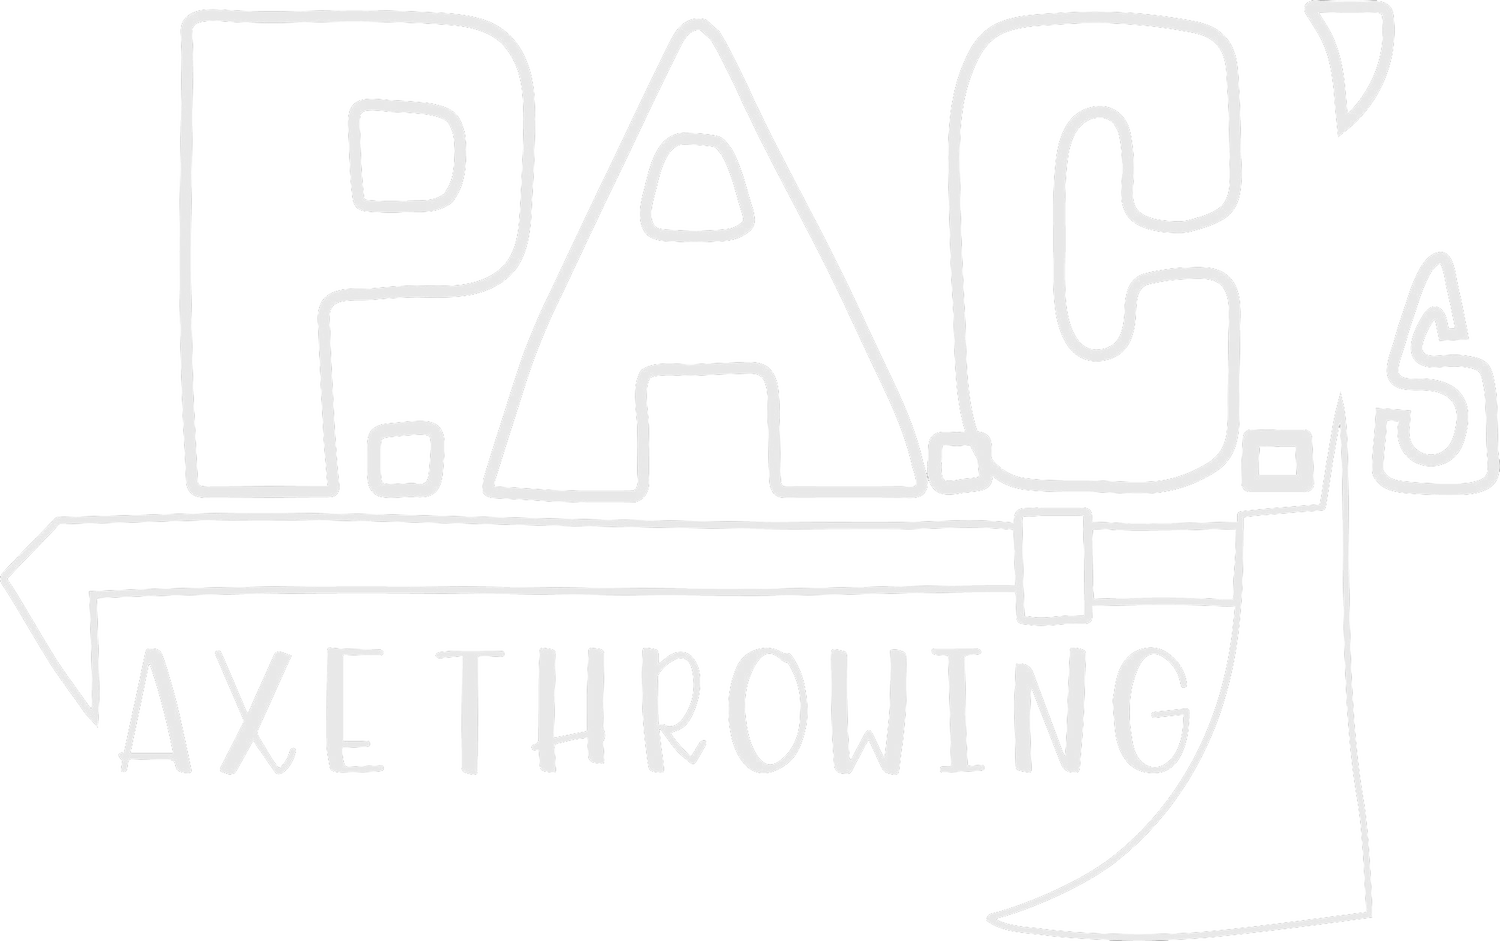 P.a.C.&#39;s Axe Throwing